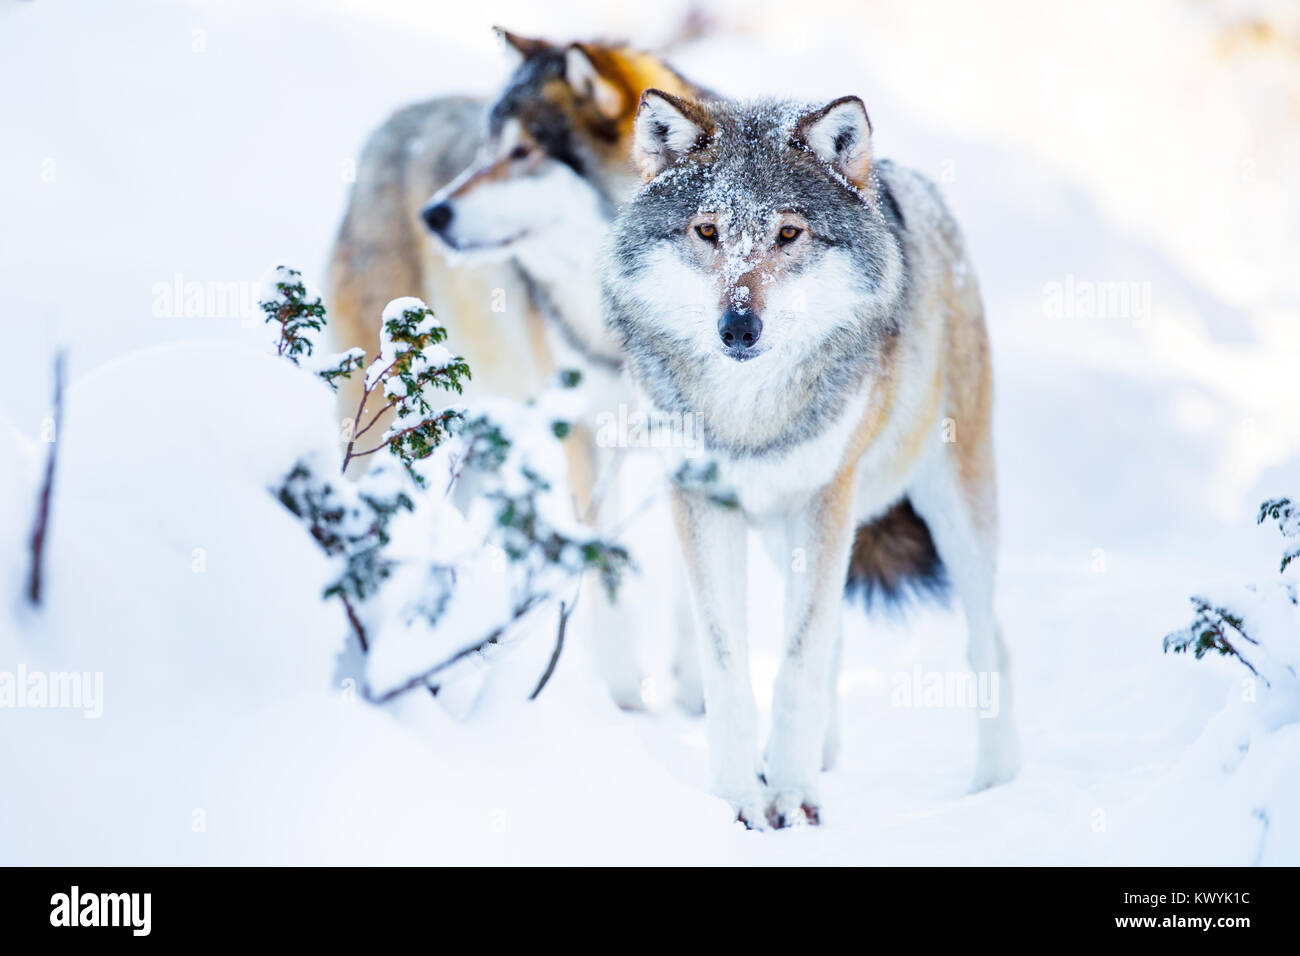 Zwei große Wölfe im kalten Winter Landschaft Stockfoto